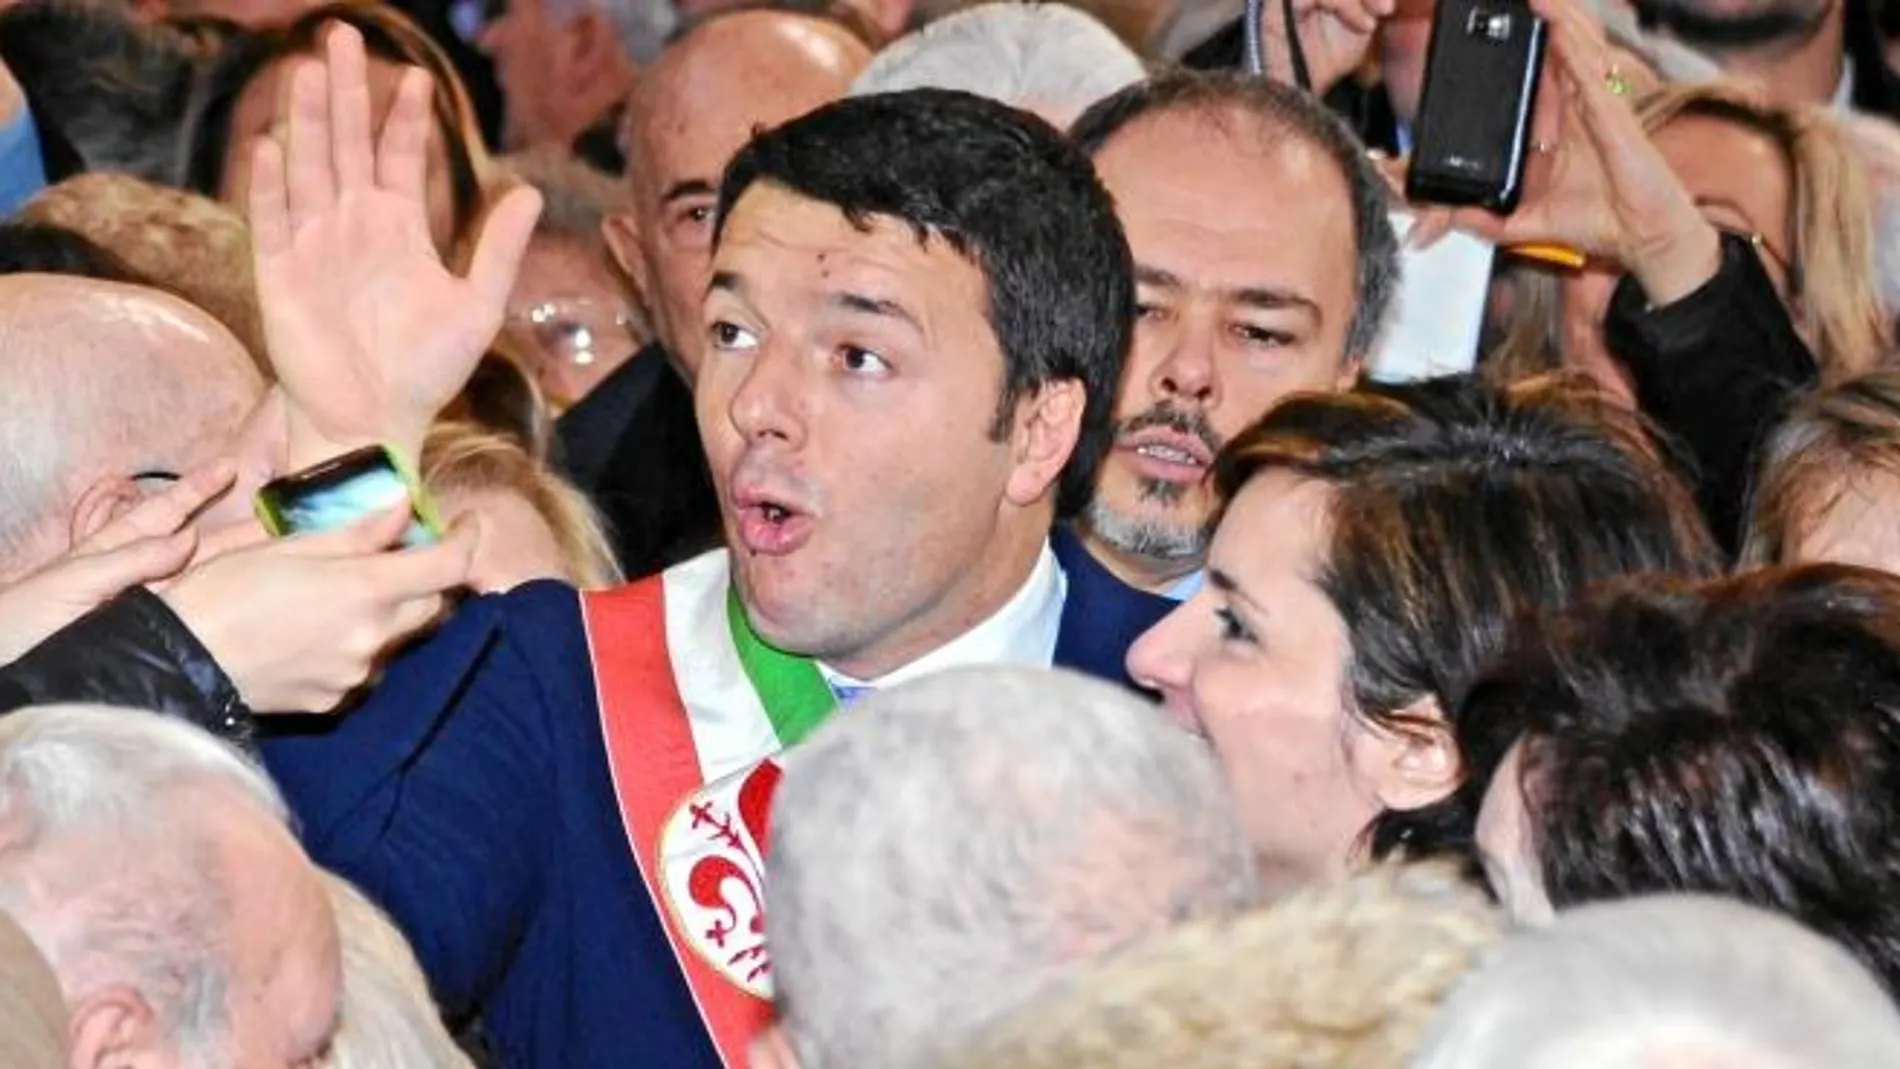 BAÑO DE MULTITUDES. El líder del PD y alcalde de Florencia, Matteo Renzi, asiste a una ceremonia en el Palacio Vecchio, ayer